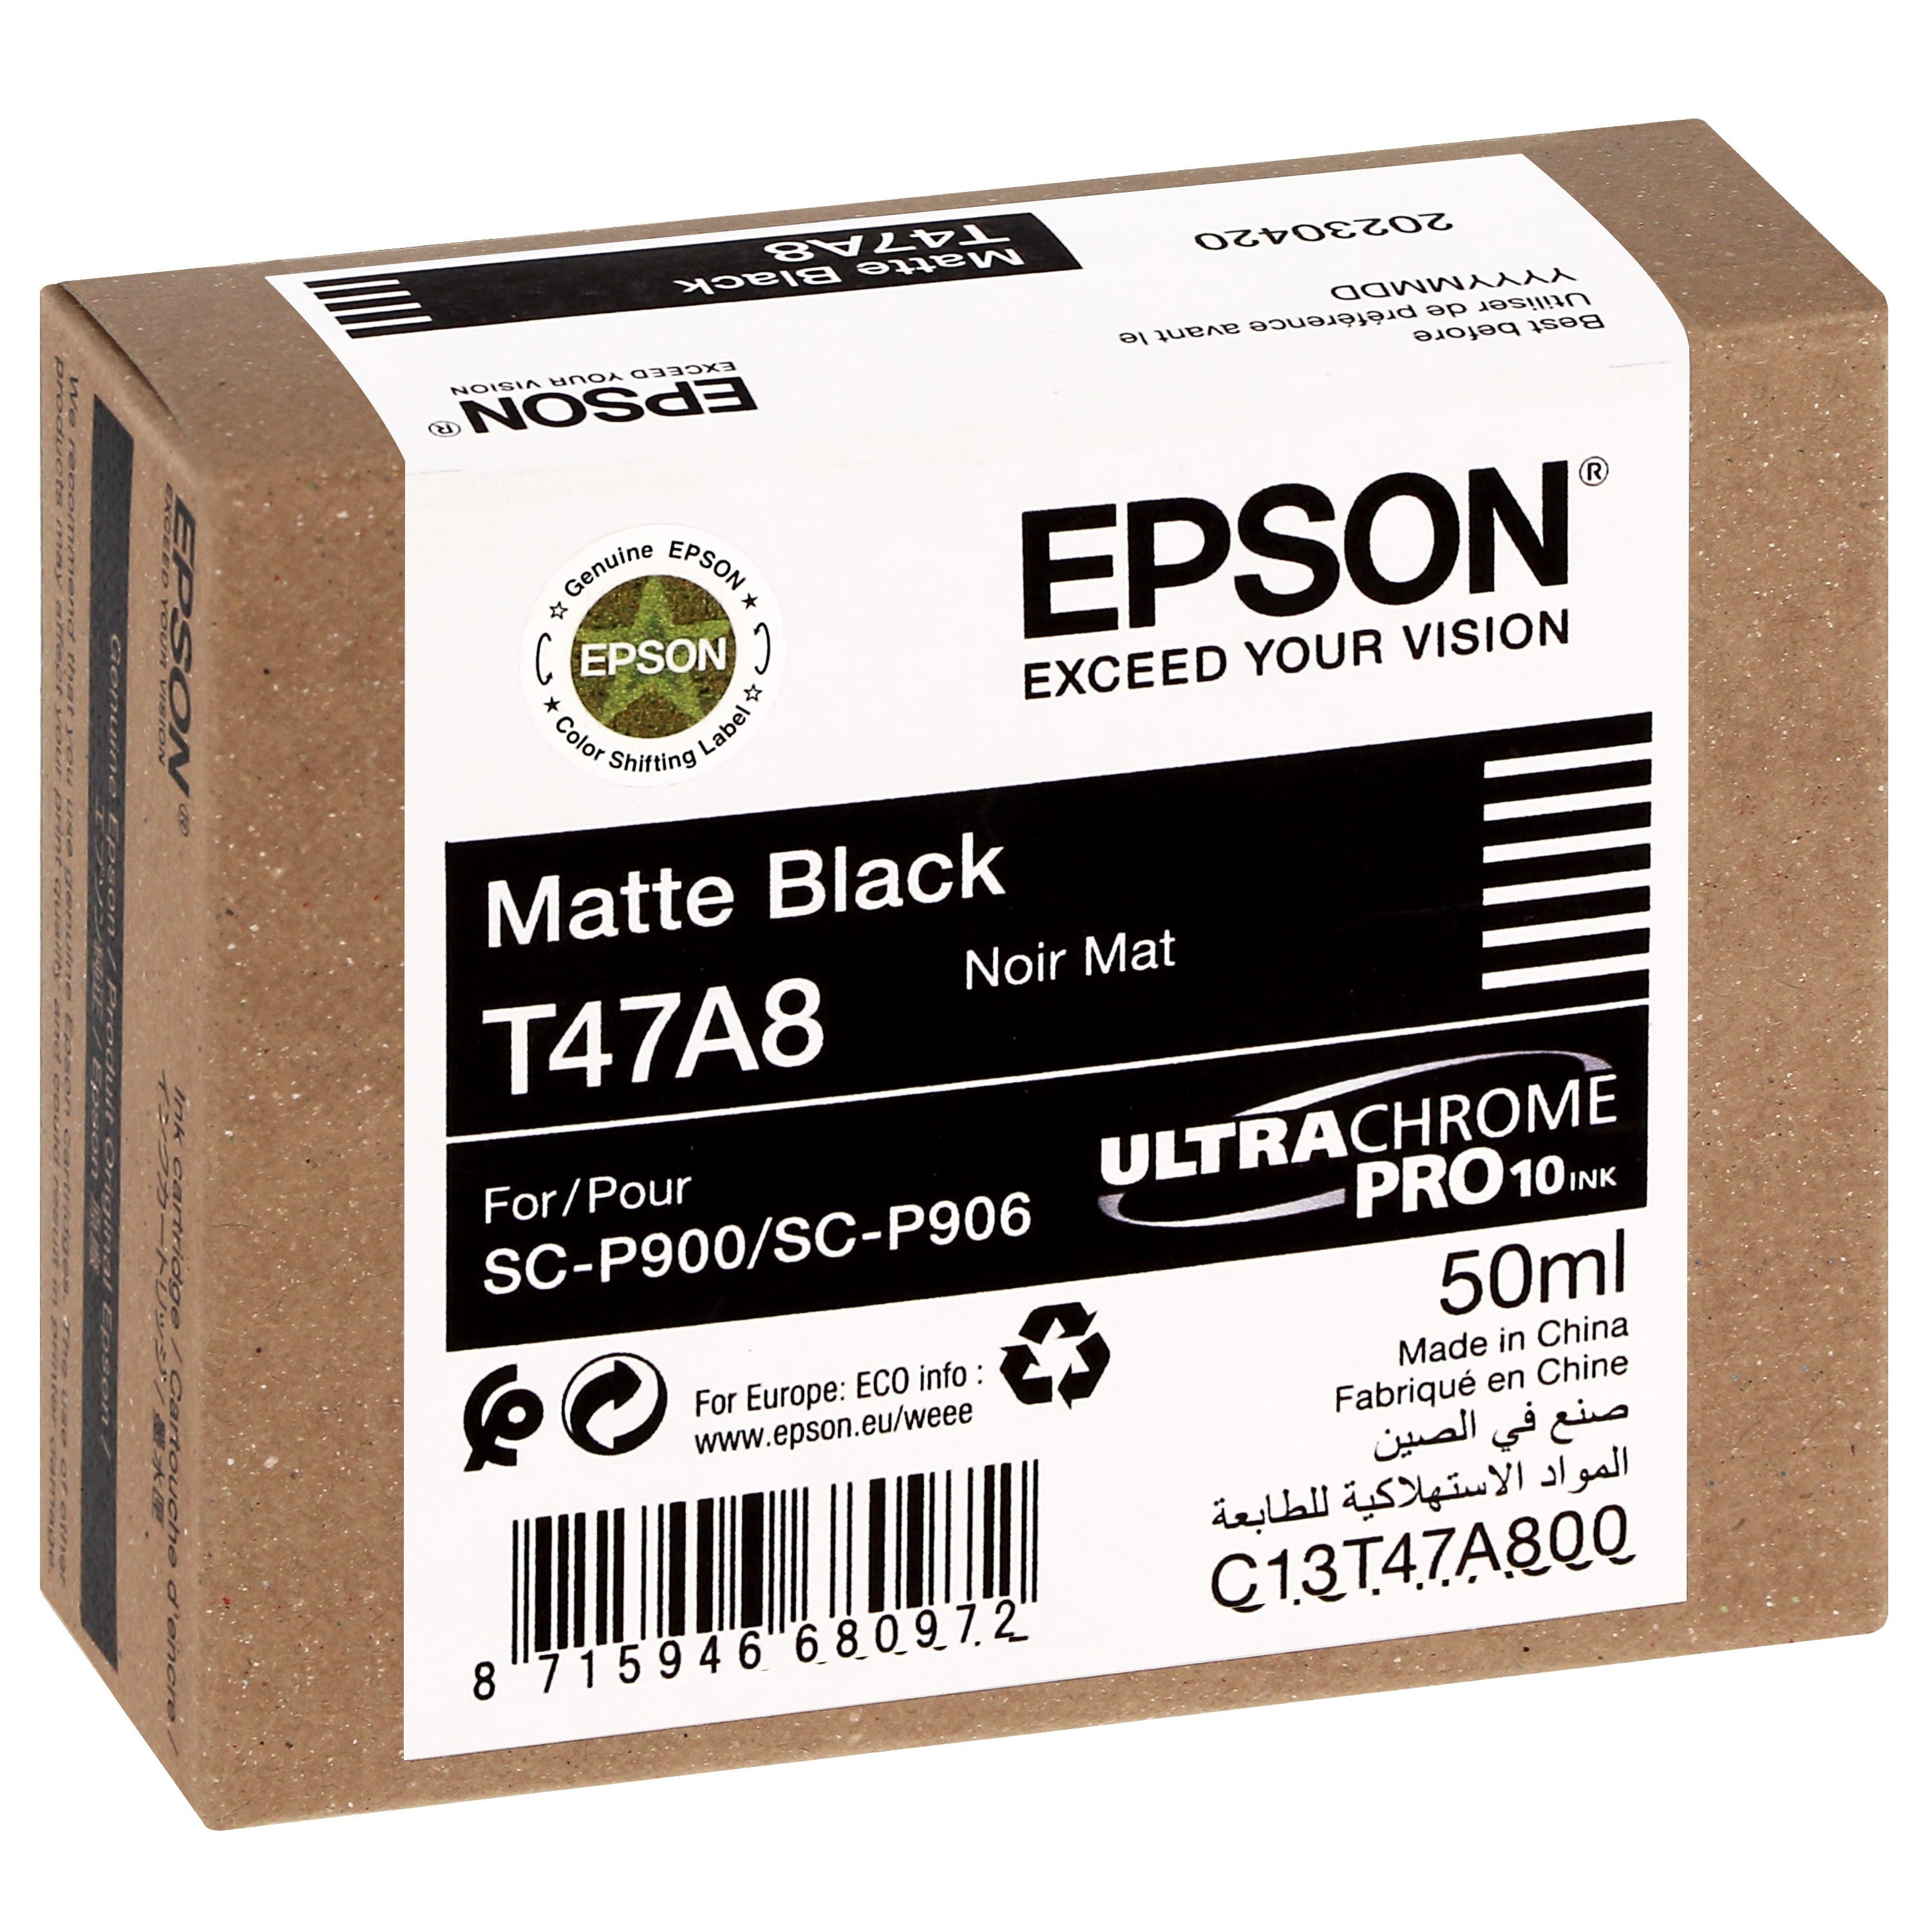 EPSON - Cartouche d'encre traceur UltraChrome Pro 10 SC-P900 - Noir mat - 50ml - T47A8